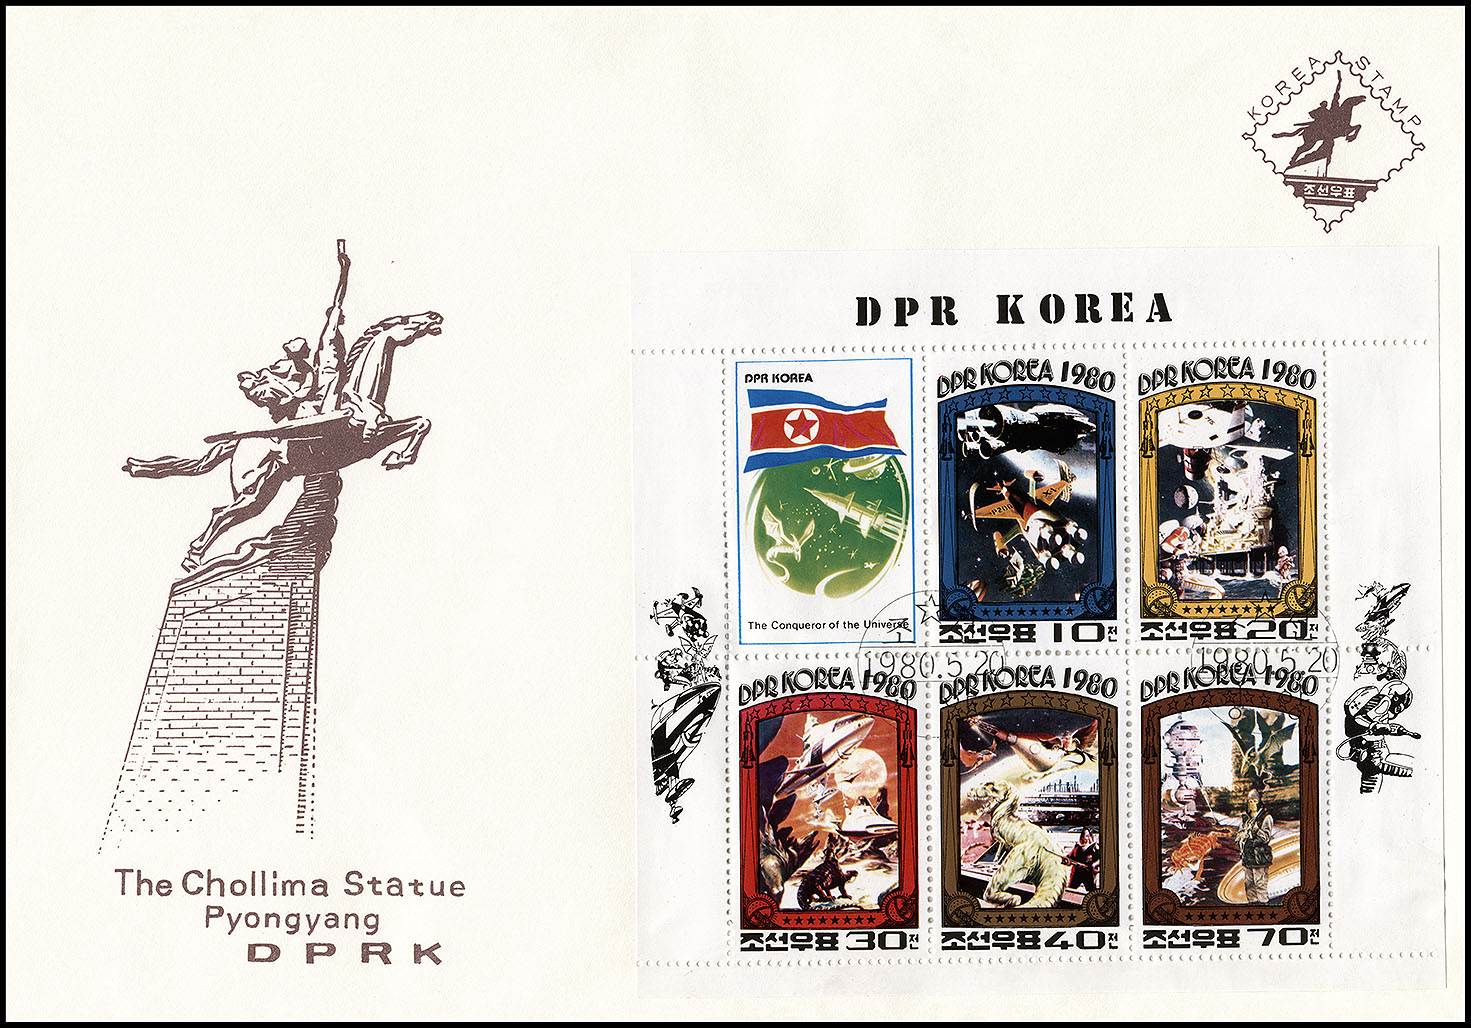 http://www.fandom.ru/about_fan/stamps/cover_korea_n_1980_fiction_mi_klb_2003a_2007a_false.jpg